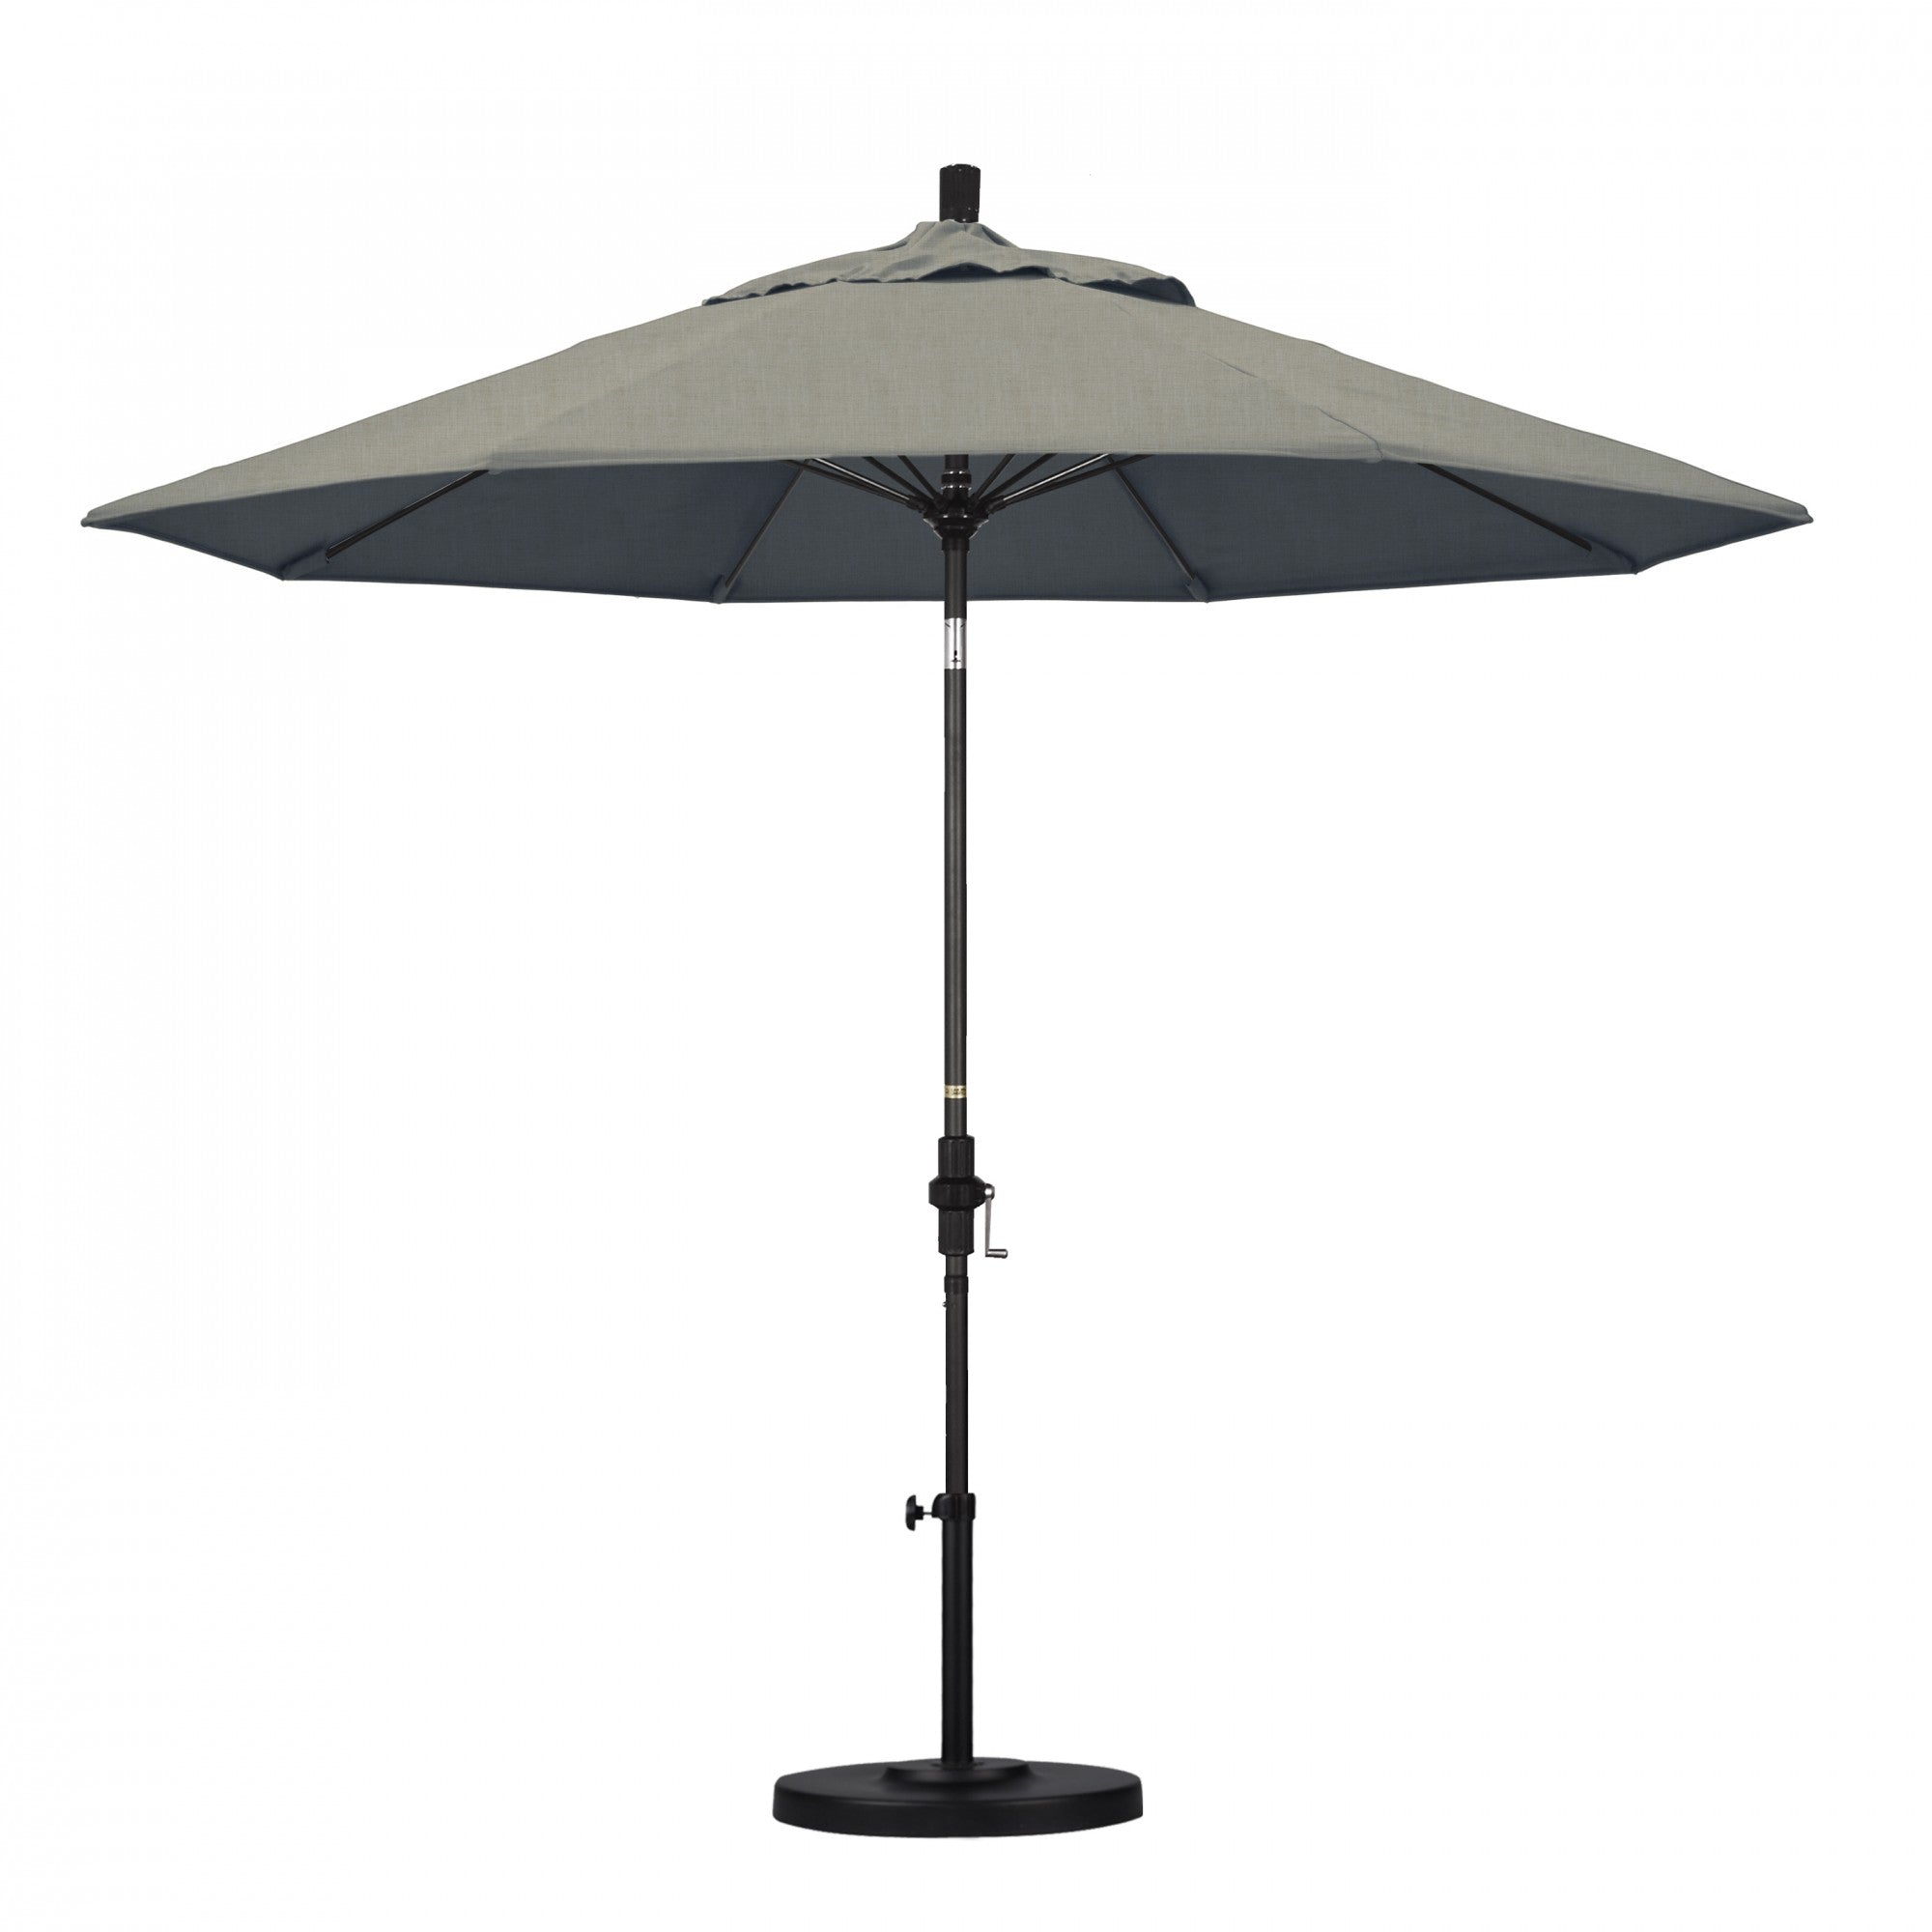 California Umbrella - 9' - Patio Umbrella Umbrella - Aluminum Pole - Spectrum Dove - Sunbrella  - GSCUF908705-48032